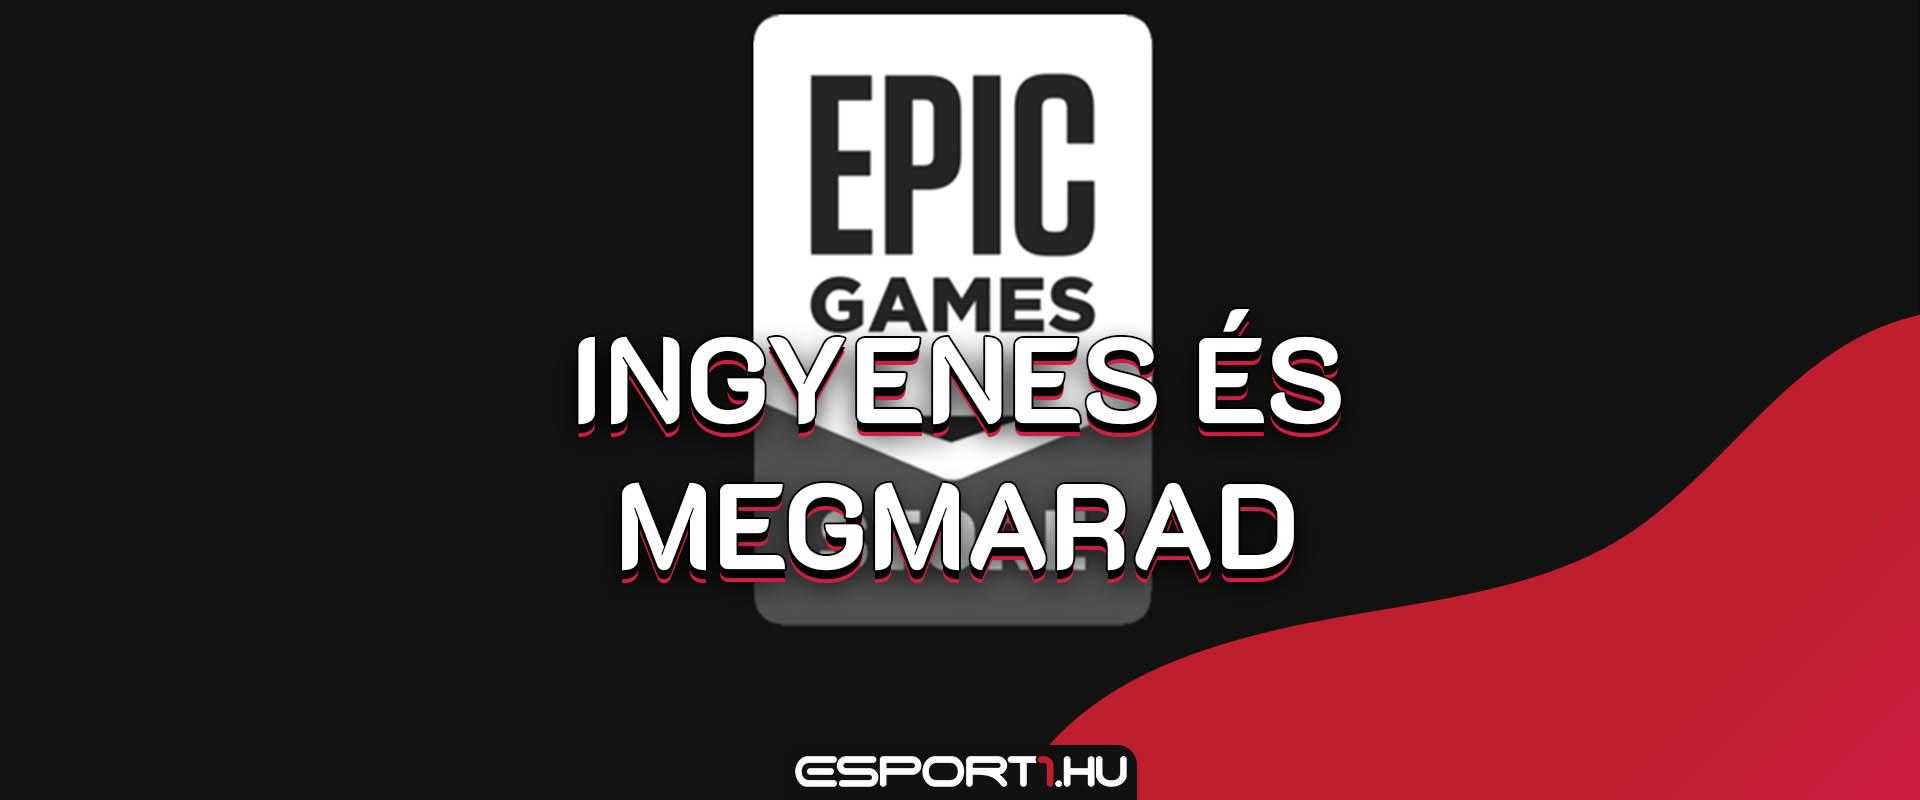 Akciófigyelő: Már tölthető az Epic Games első ingyenes ünnepi játéka